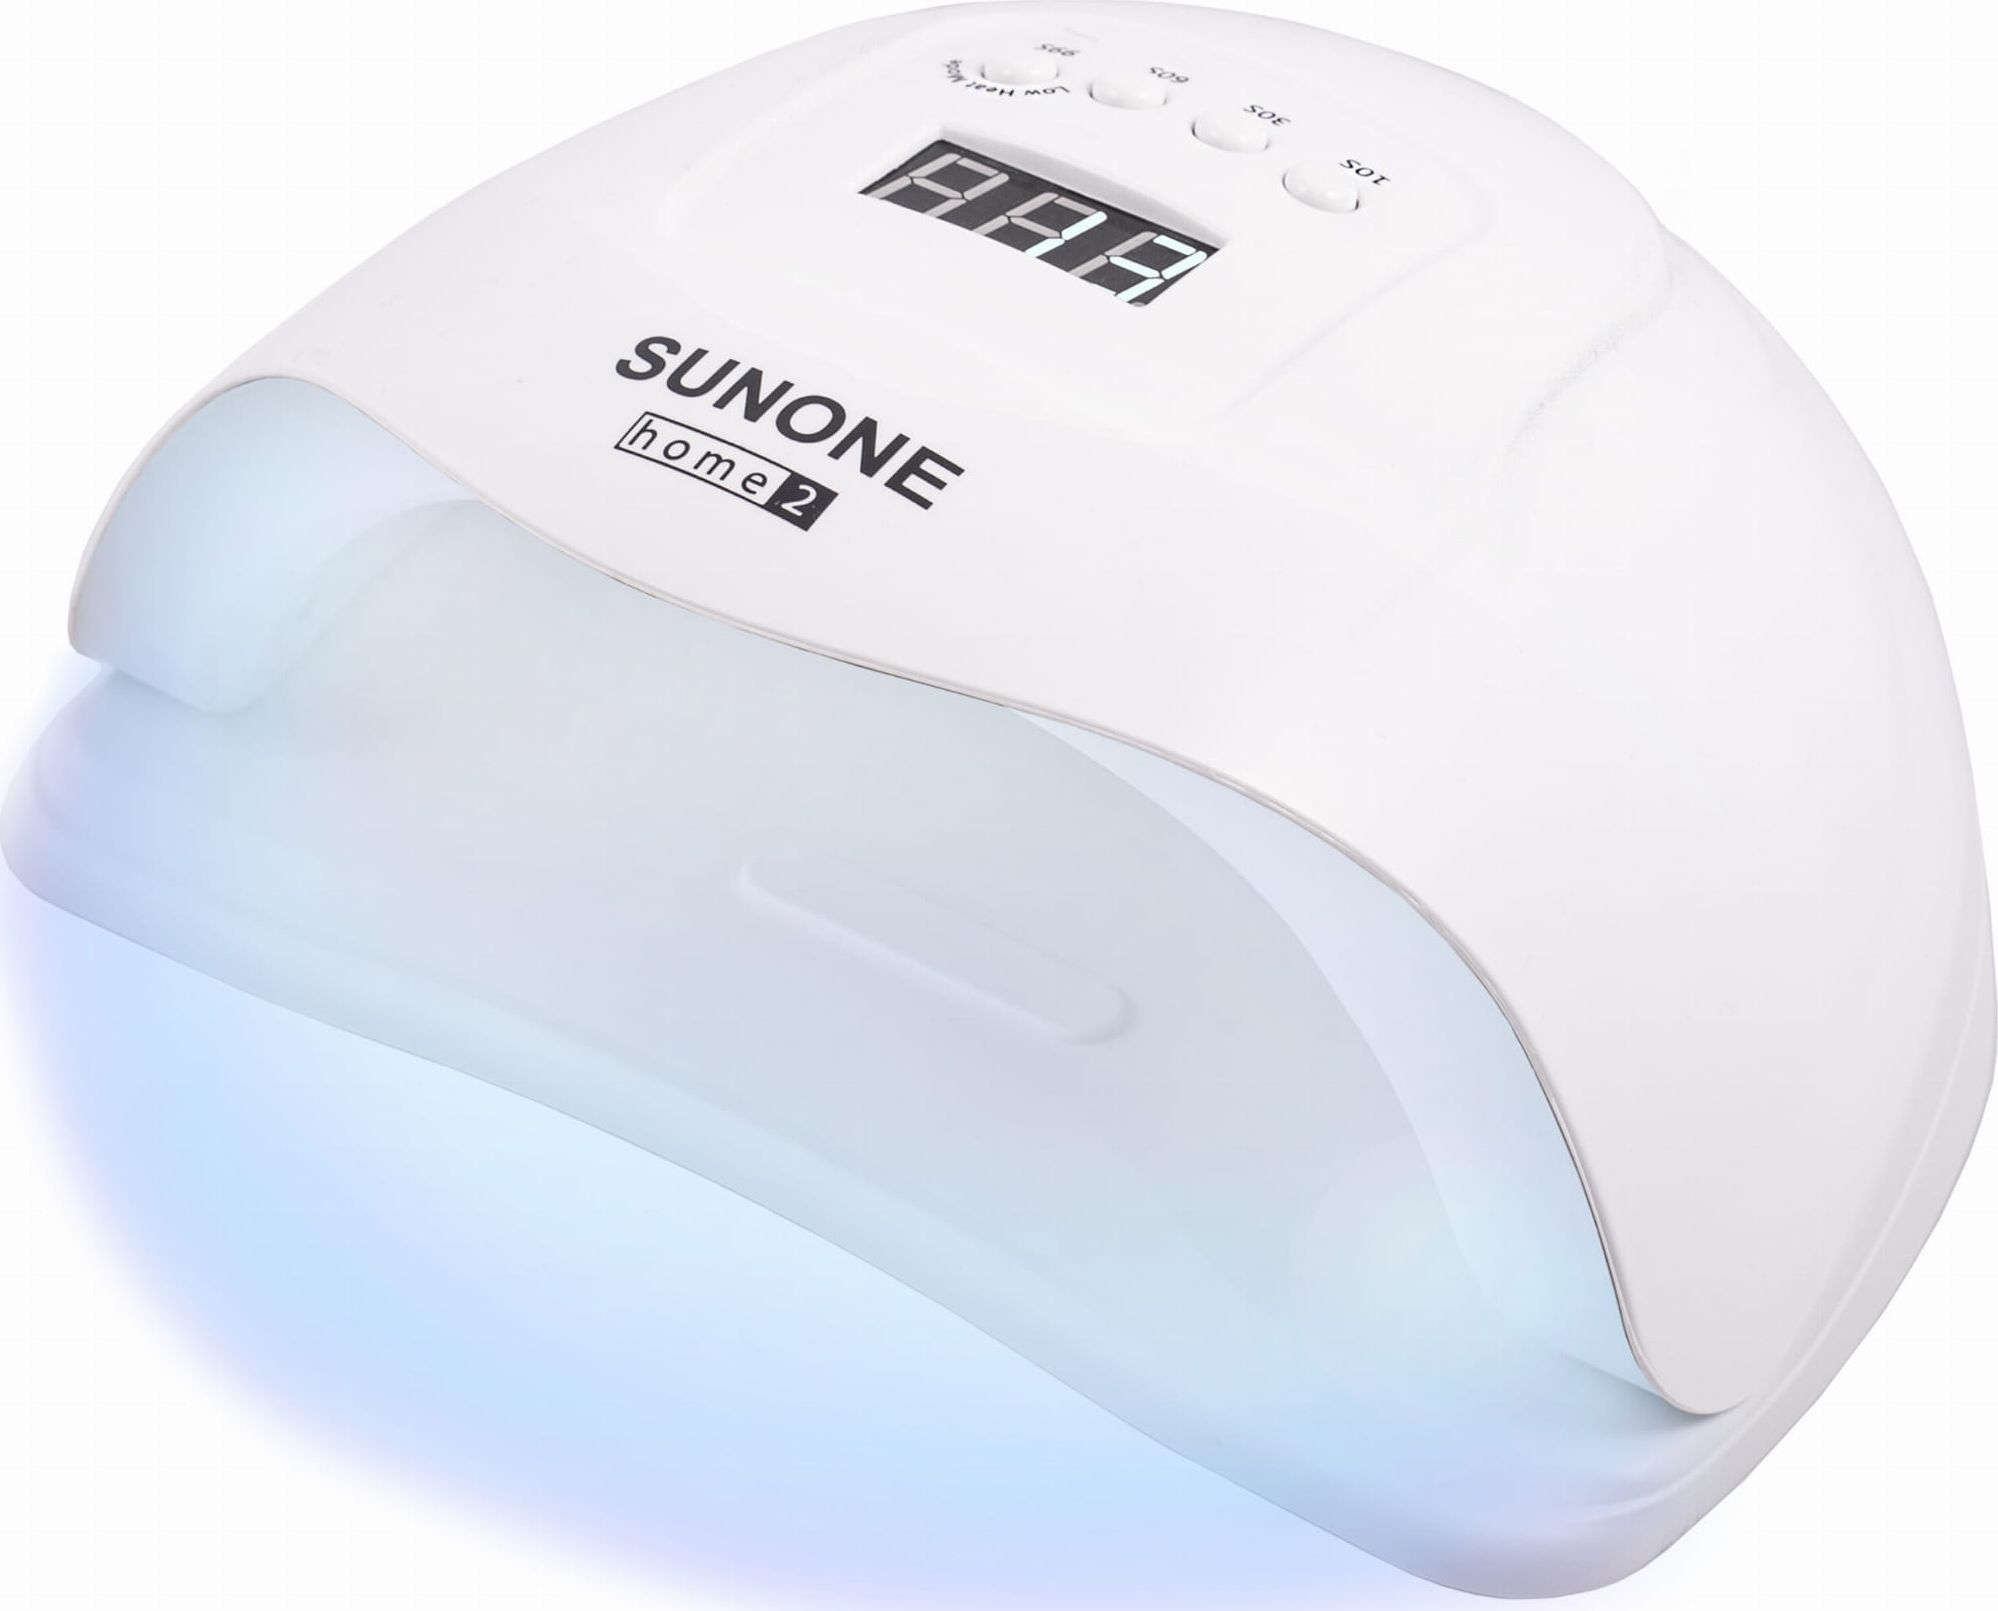 Sunone nail lamp UV LED lamp home2